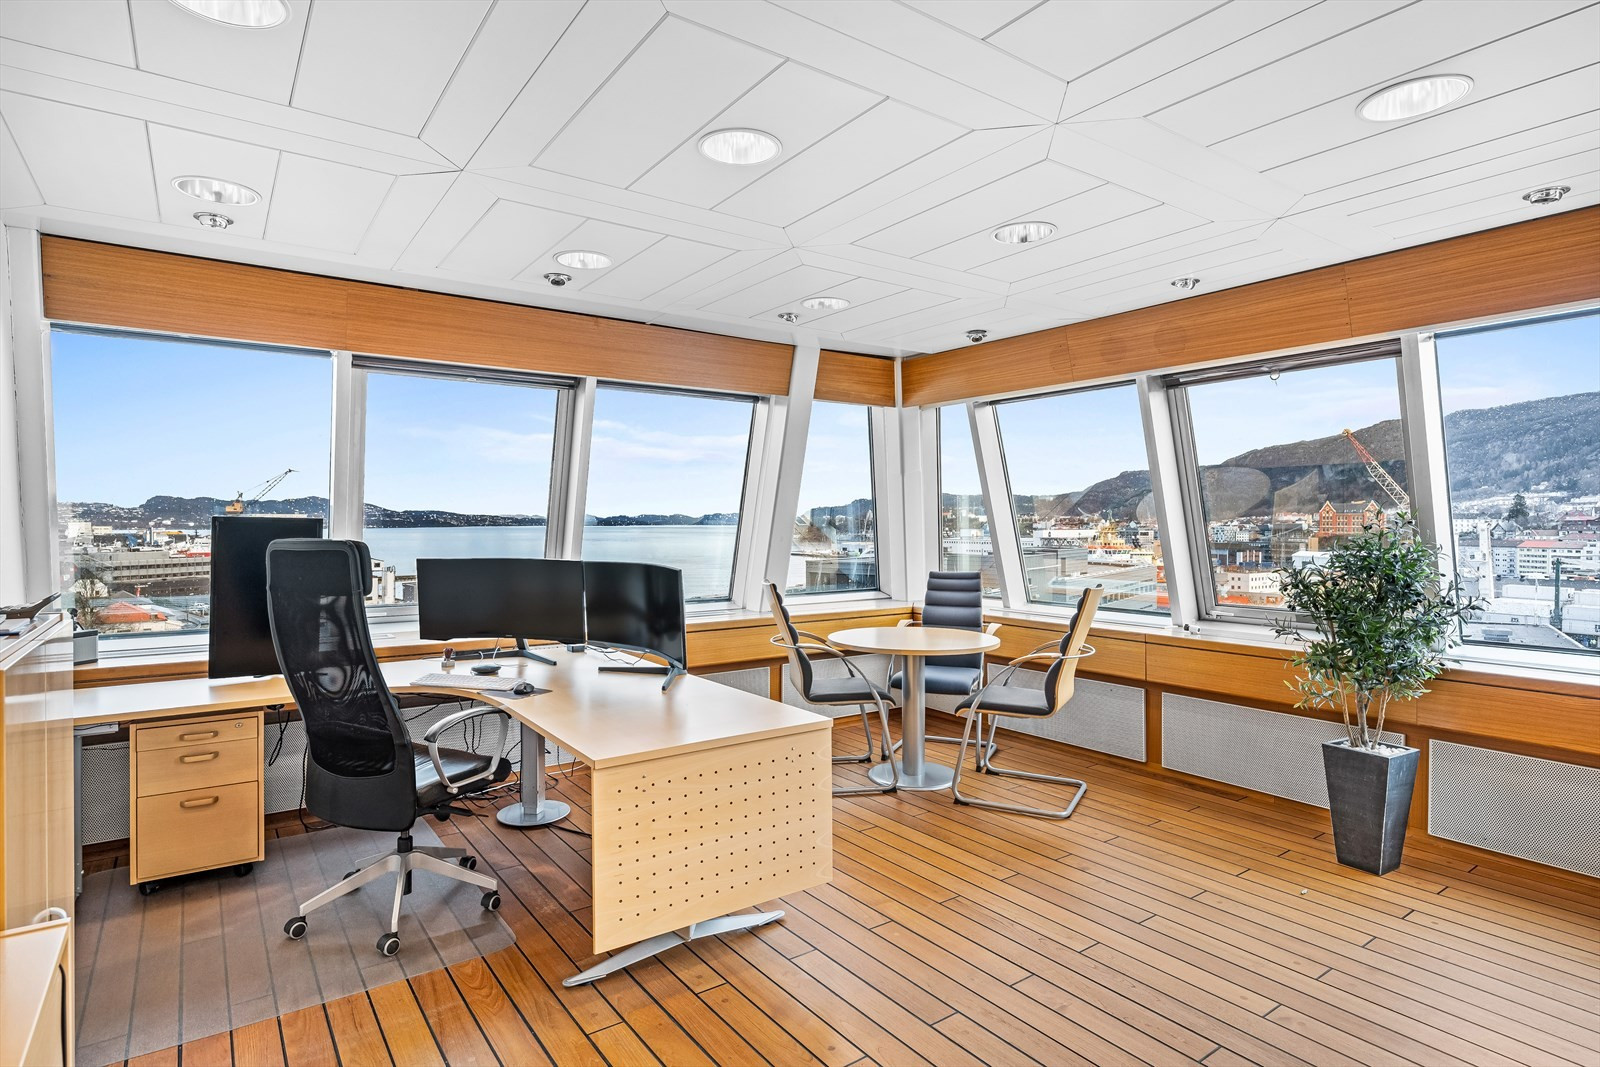 Stort kontor i de ledige lokalene med fantastisk utsikt over Puddefjorden og byfjellene